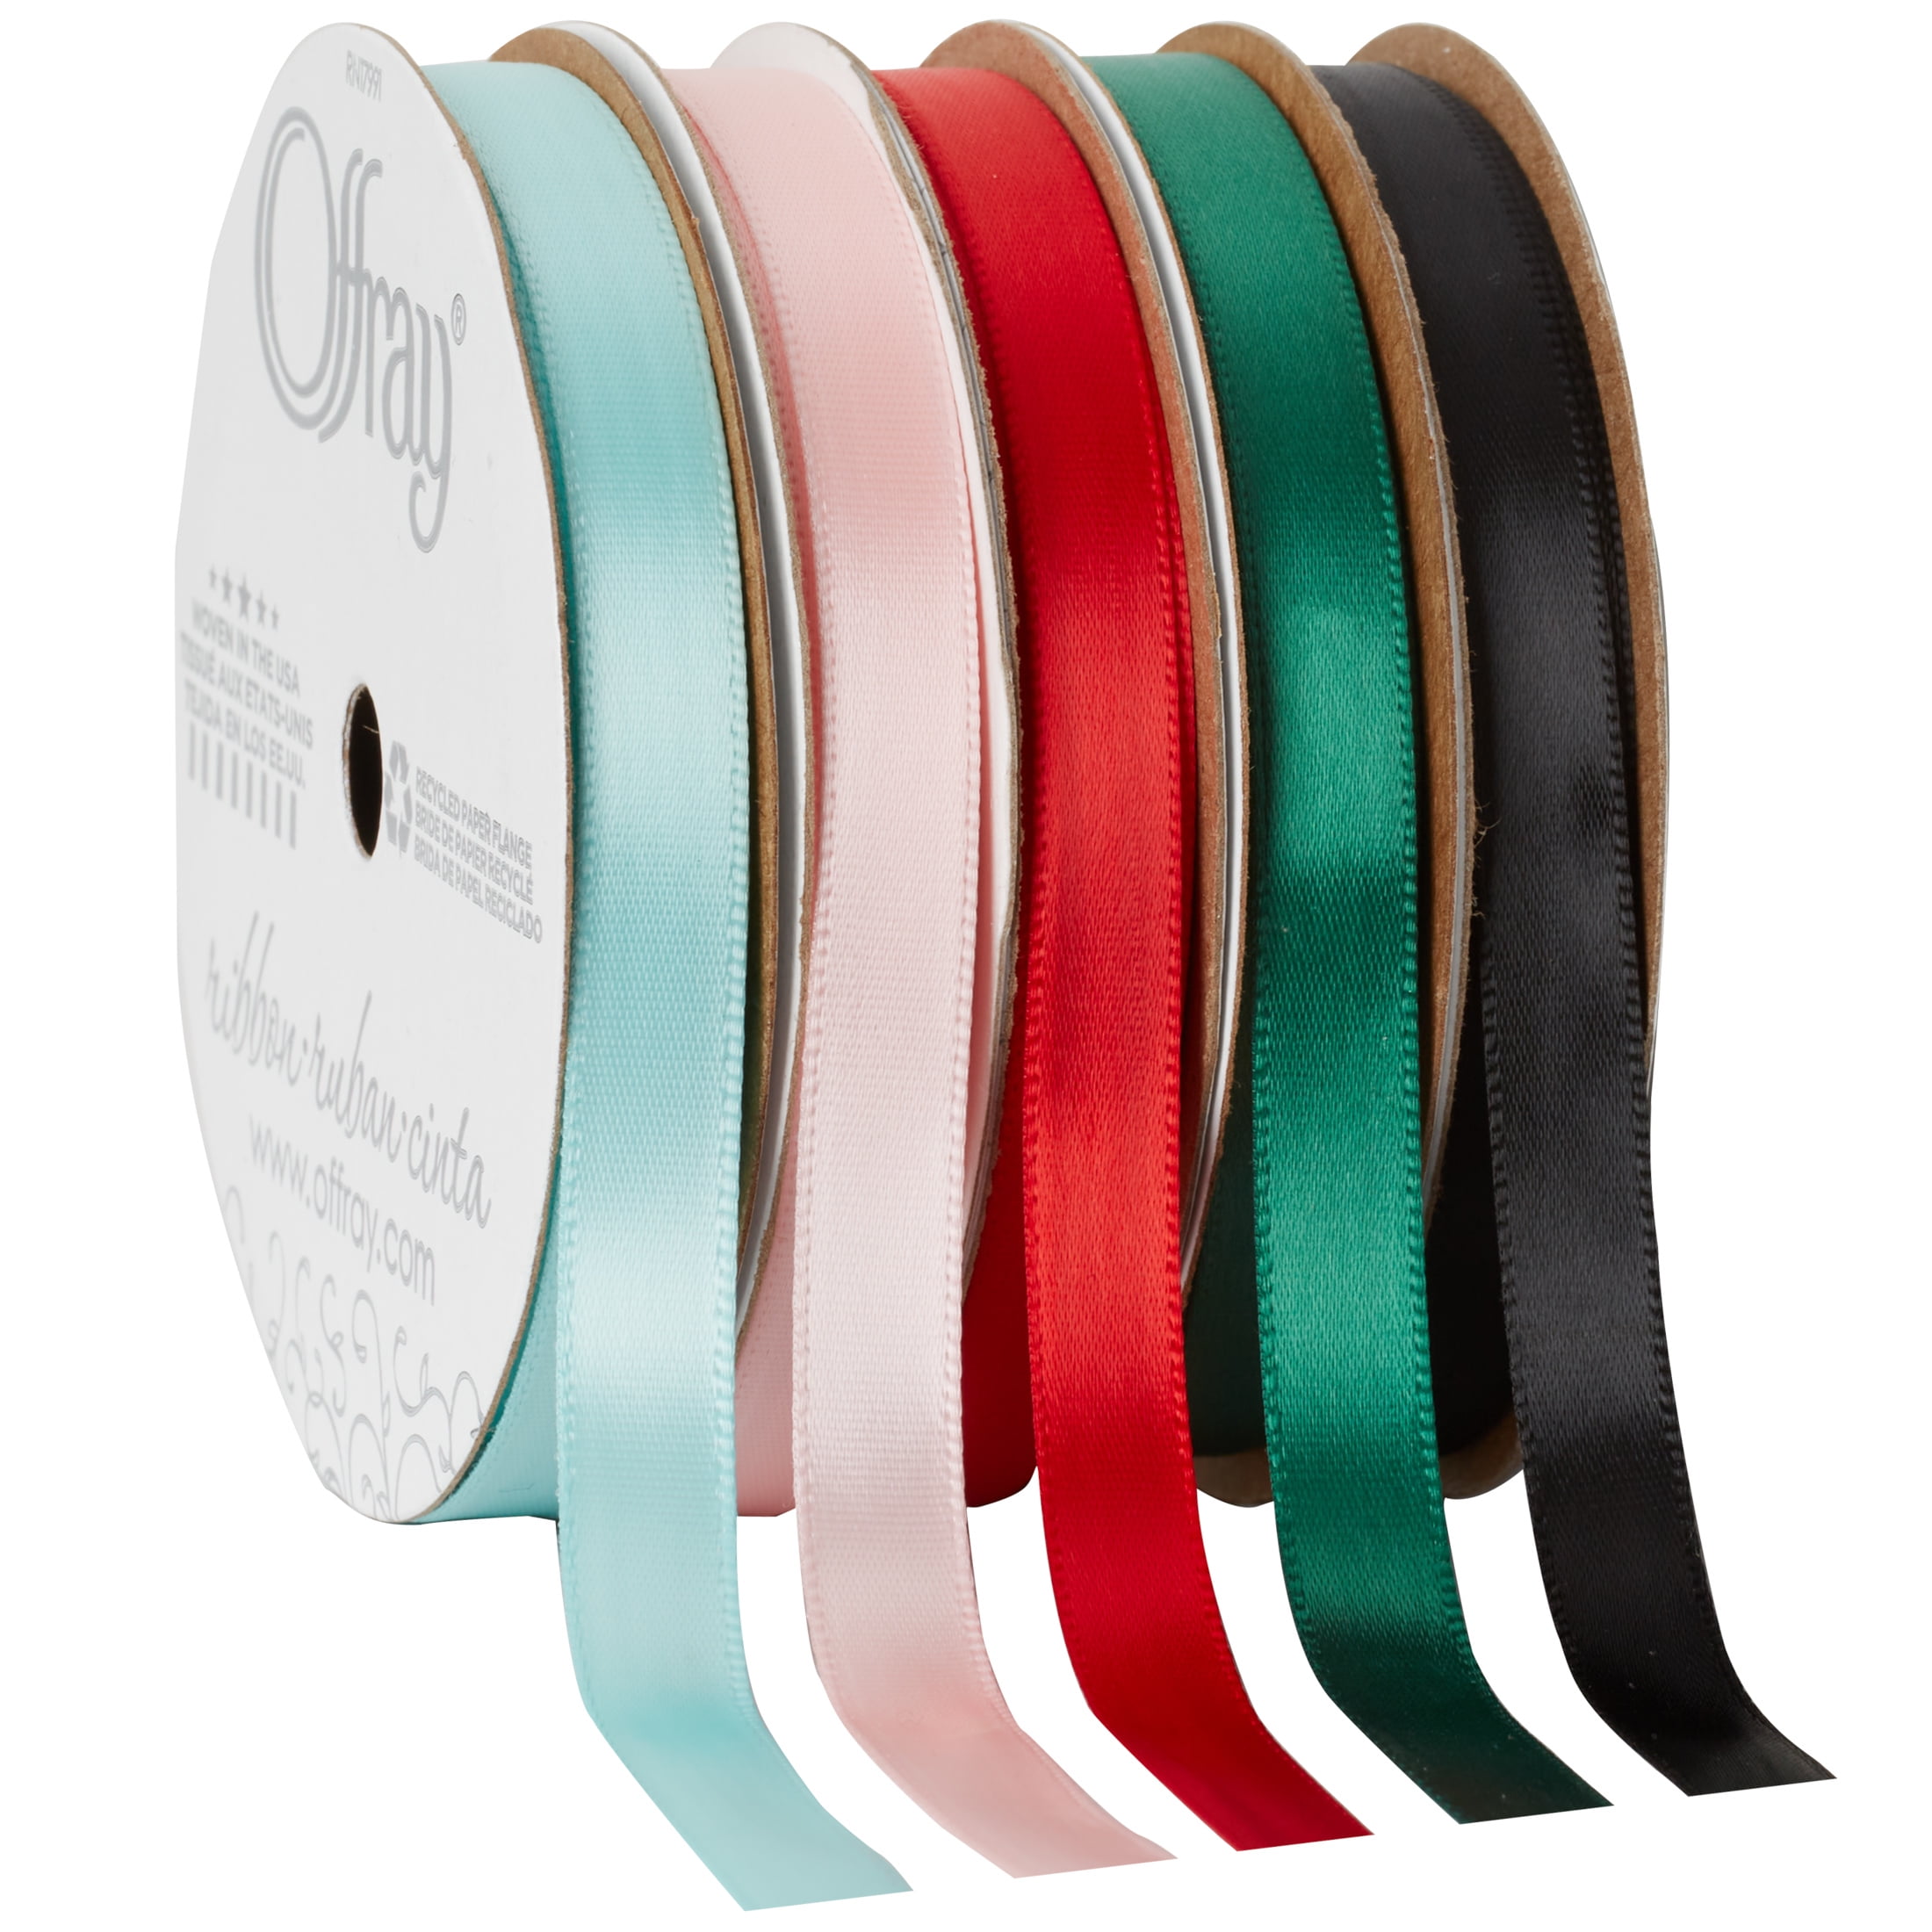 Offray 3/8x21' Single Faced Satin Ribbon - Navy - Ribbon & Deco Mesh - Crafts & Hobbies